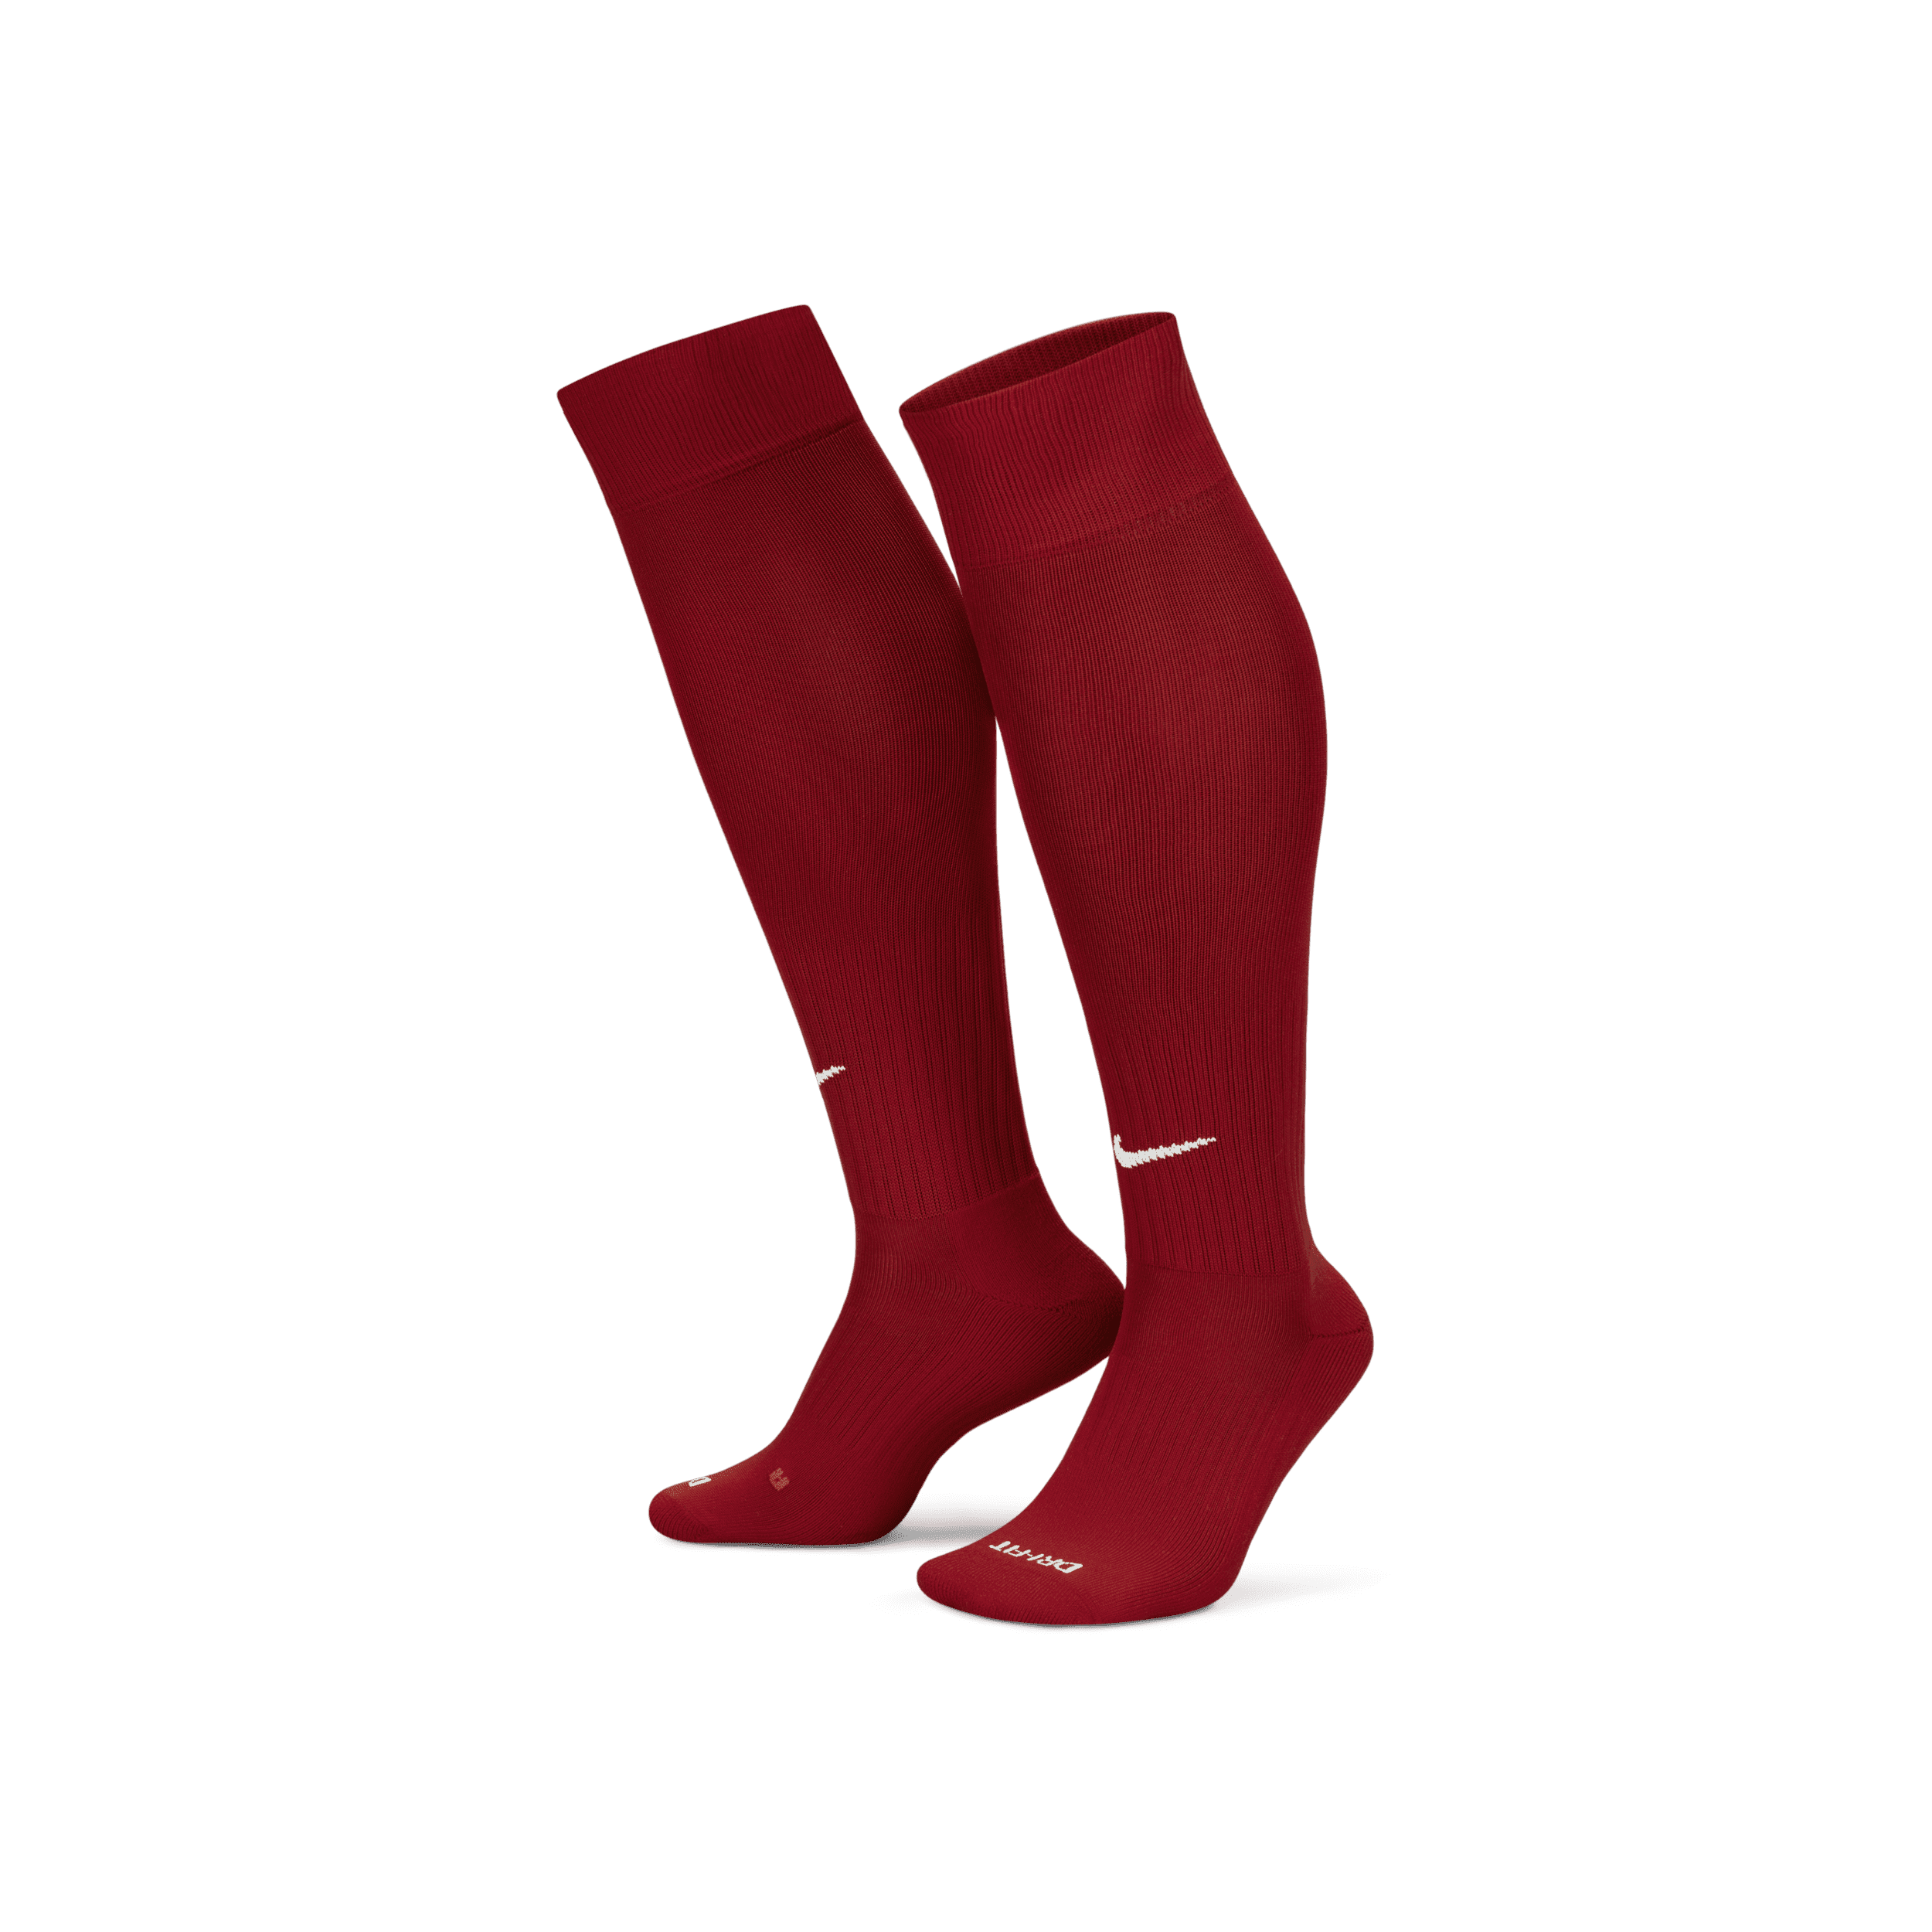 Calzettoni da calcio Nike Academy - Rosso